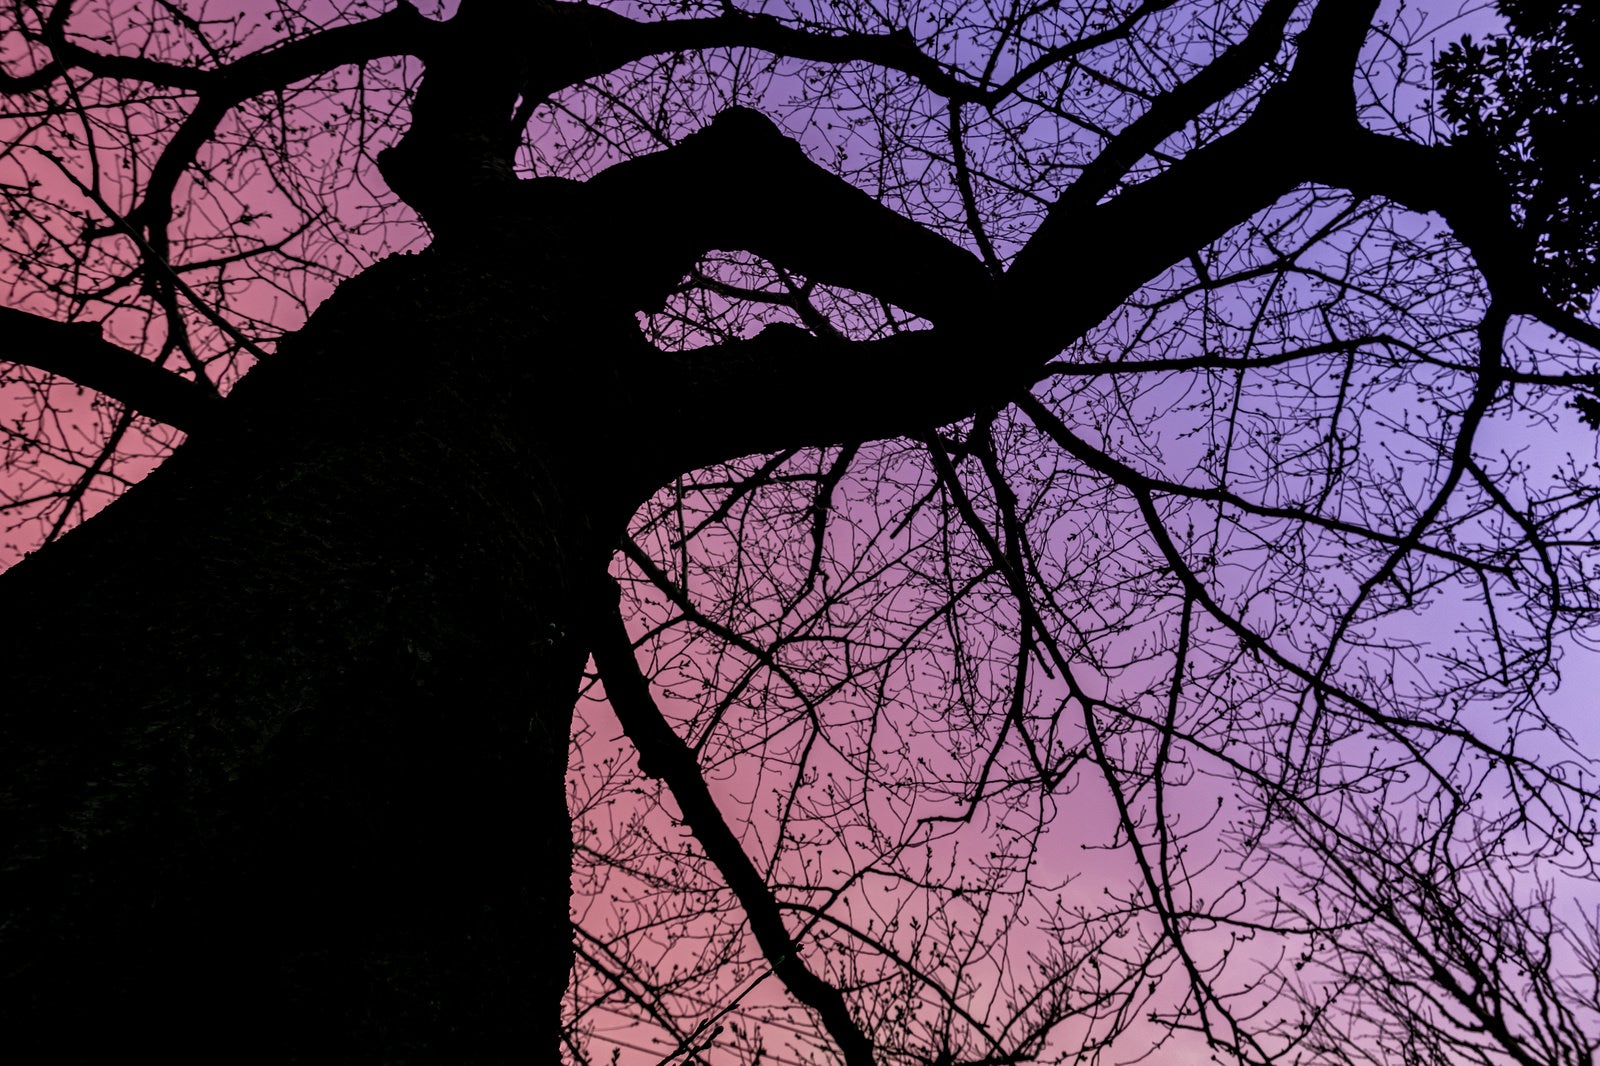 「夕焼けグラデーションと木のシルエット」の写真